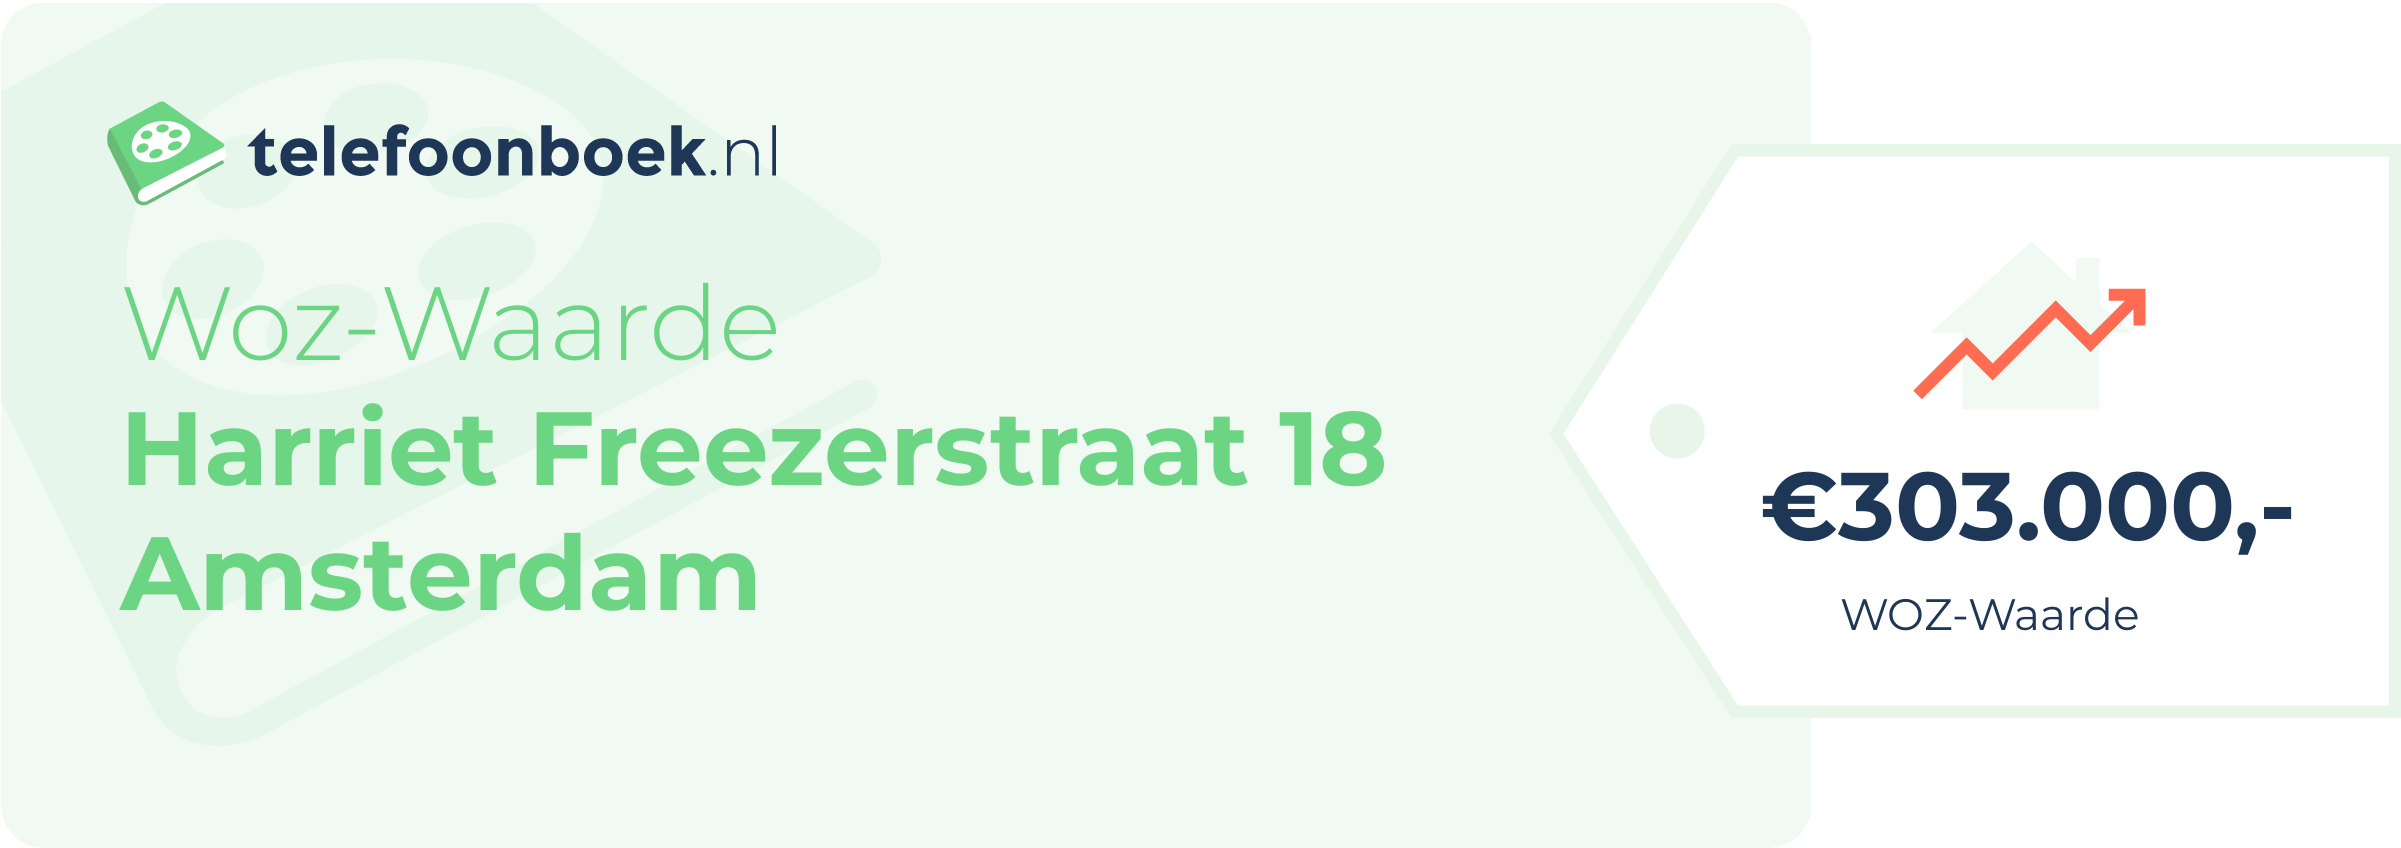 WOZ-waarde Harriet Freezerstraat 18 Amsterdam